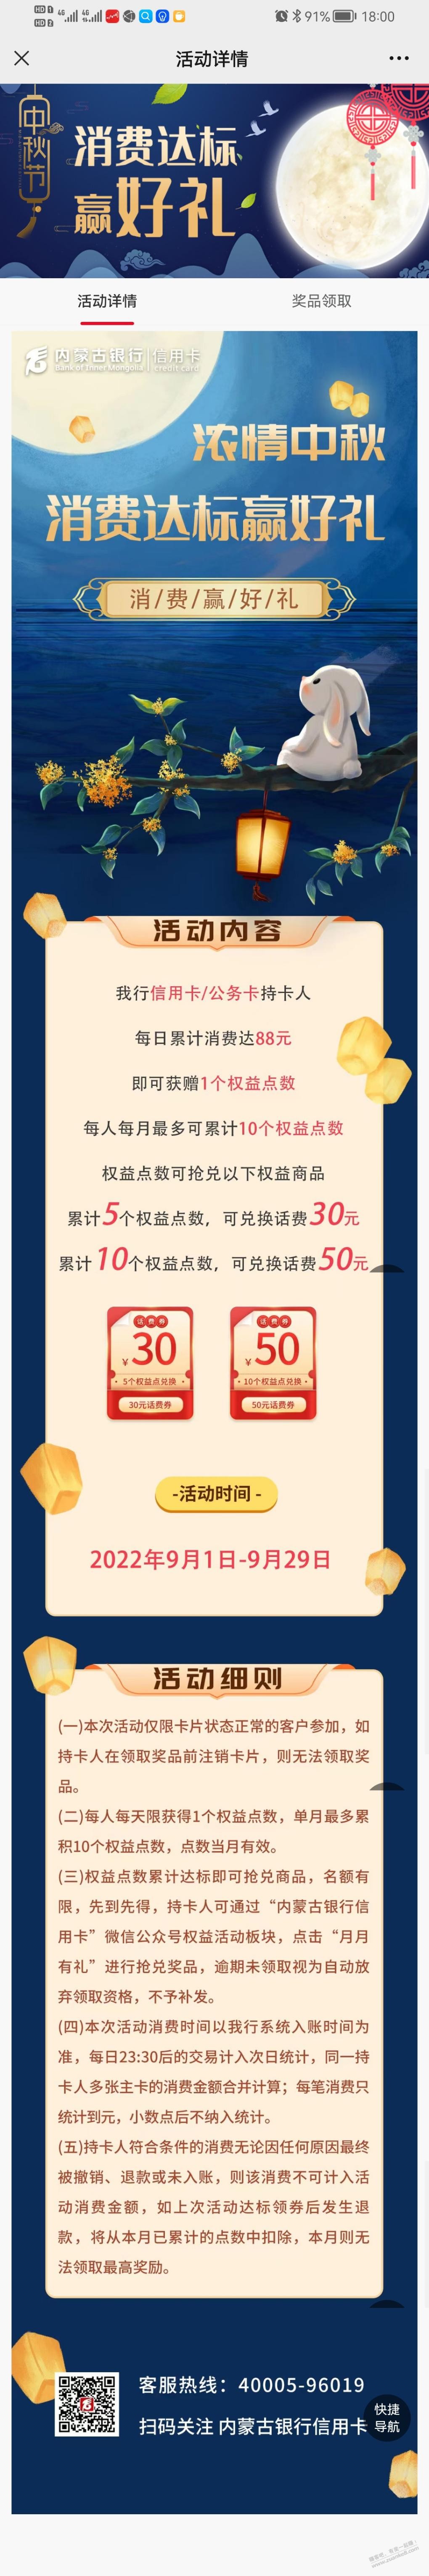 内蒙古银行xing/用卡每天消费满88元-消费10天可以领取50元话费-惠小助(52huixz.com)